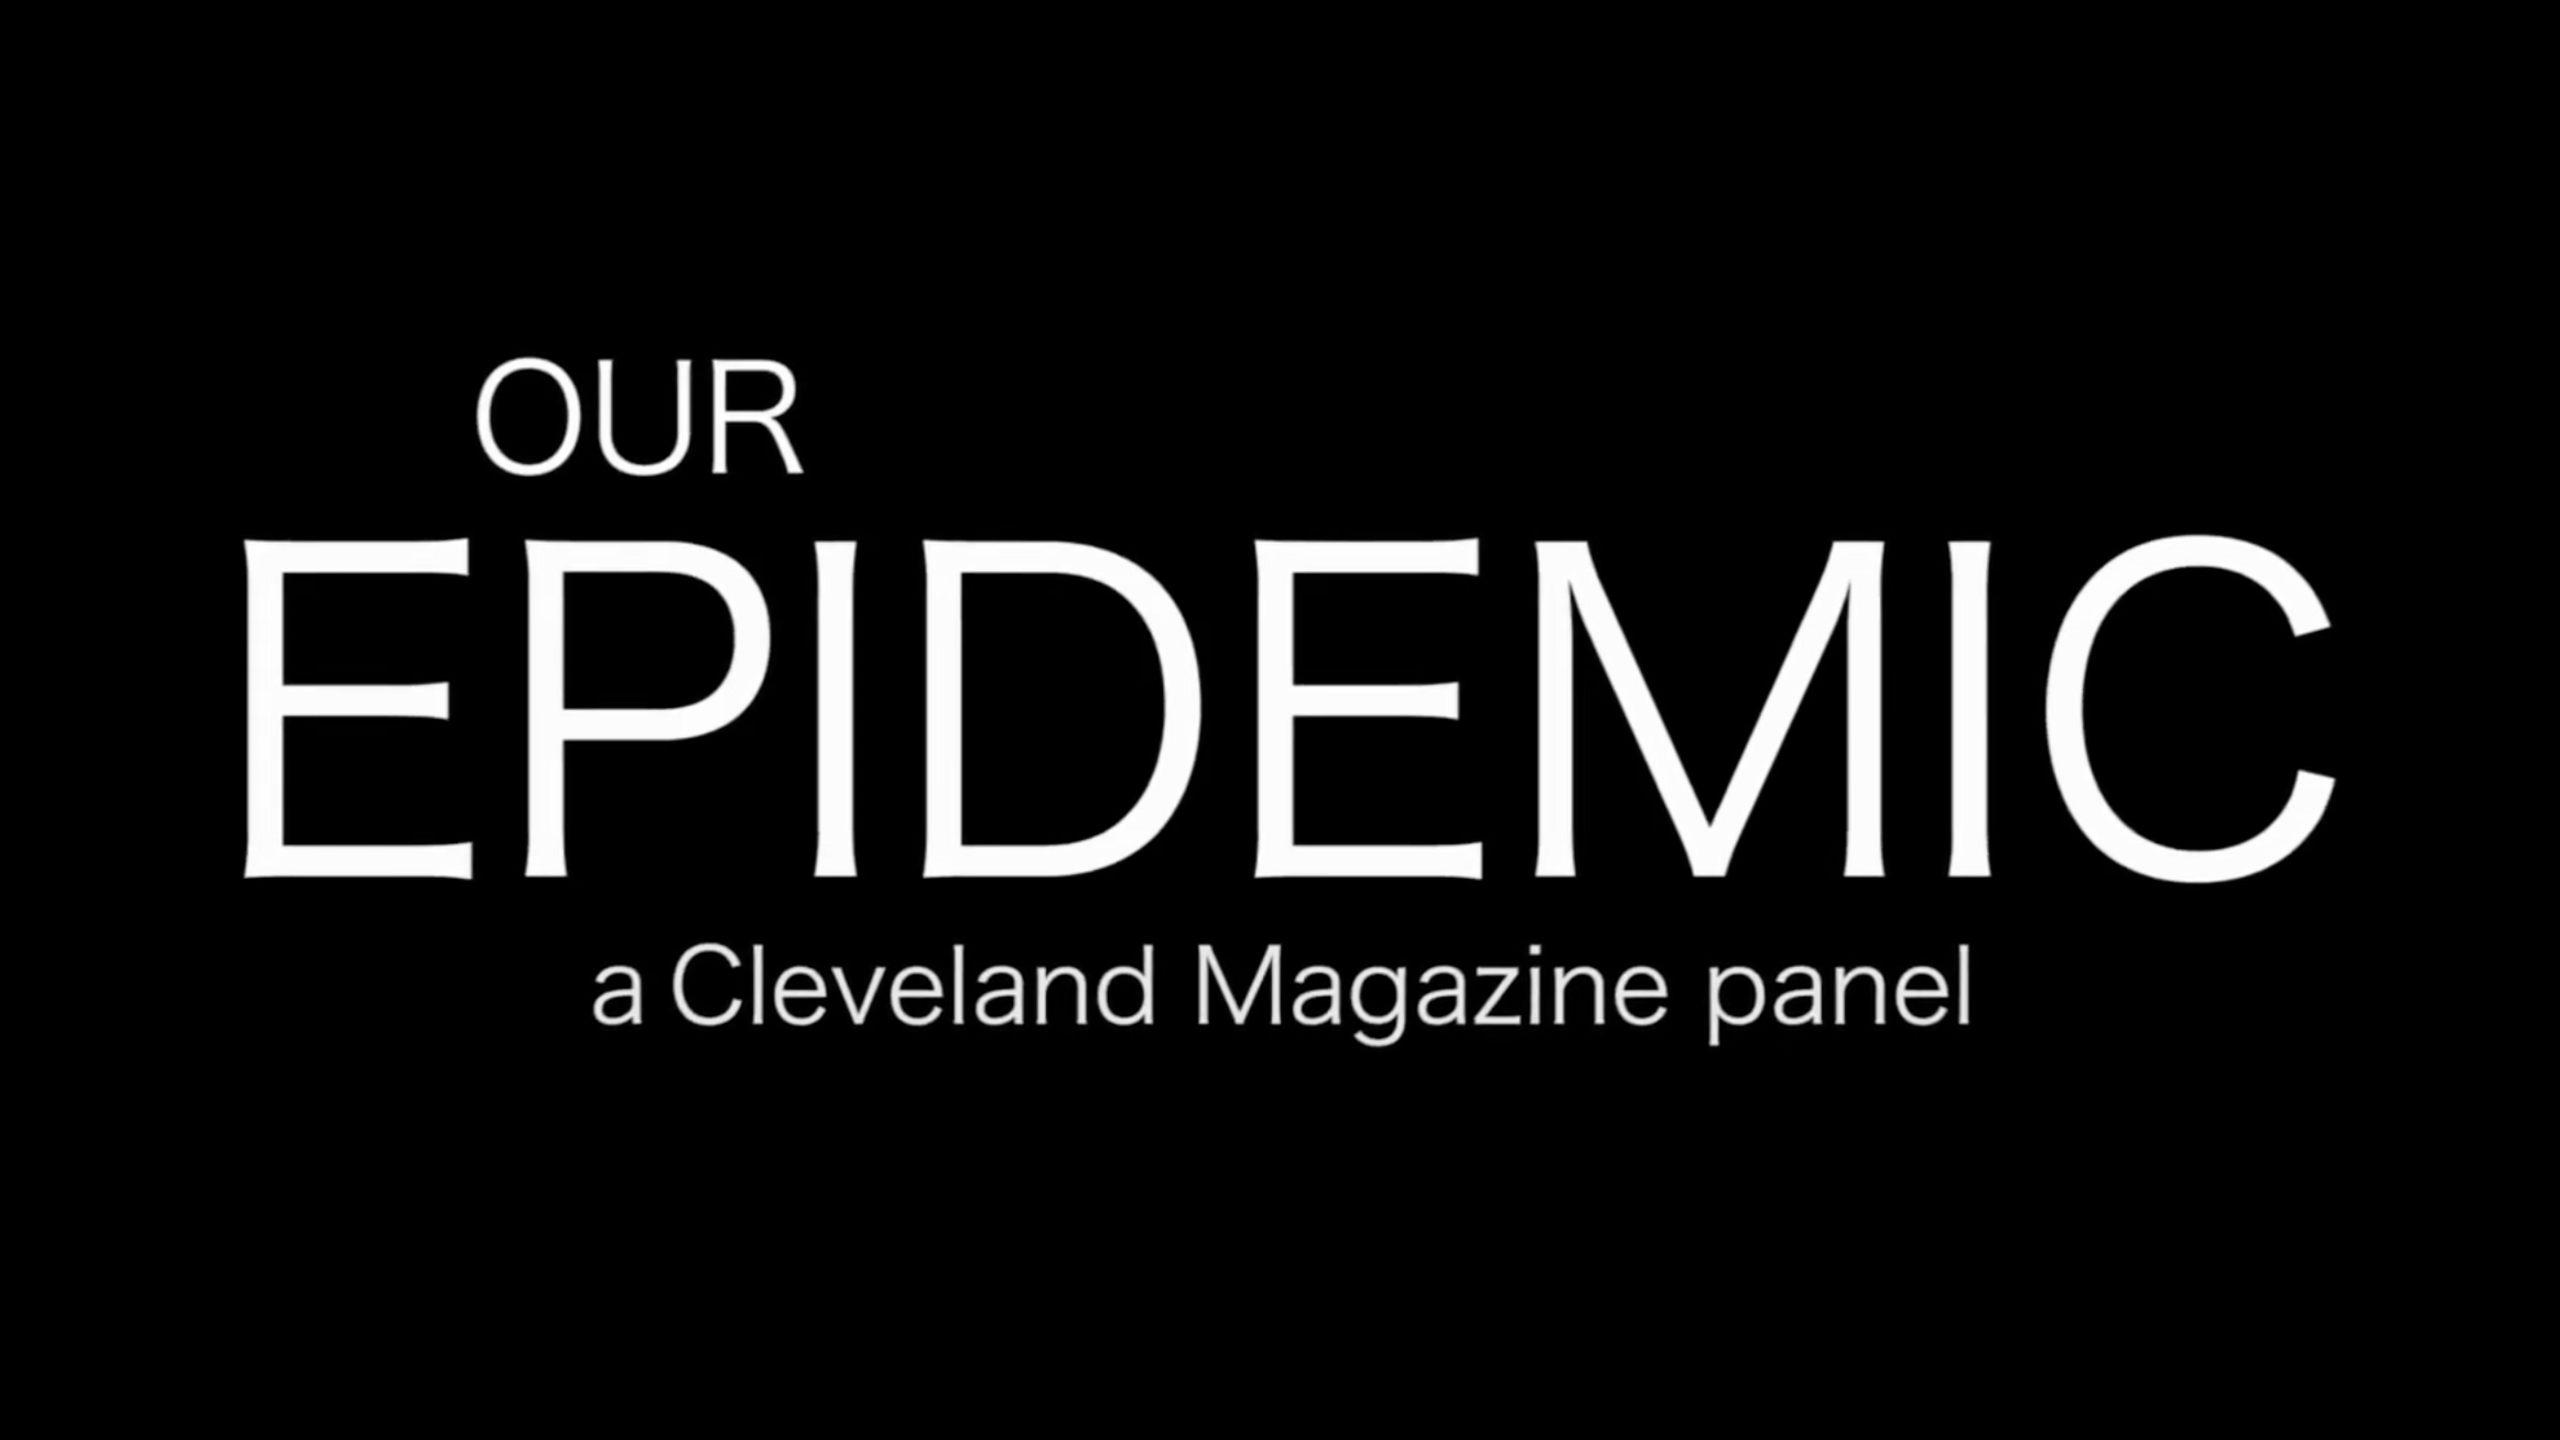 Cleveland Magazine "Our Epidemic" 